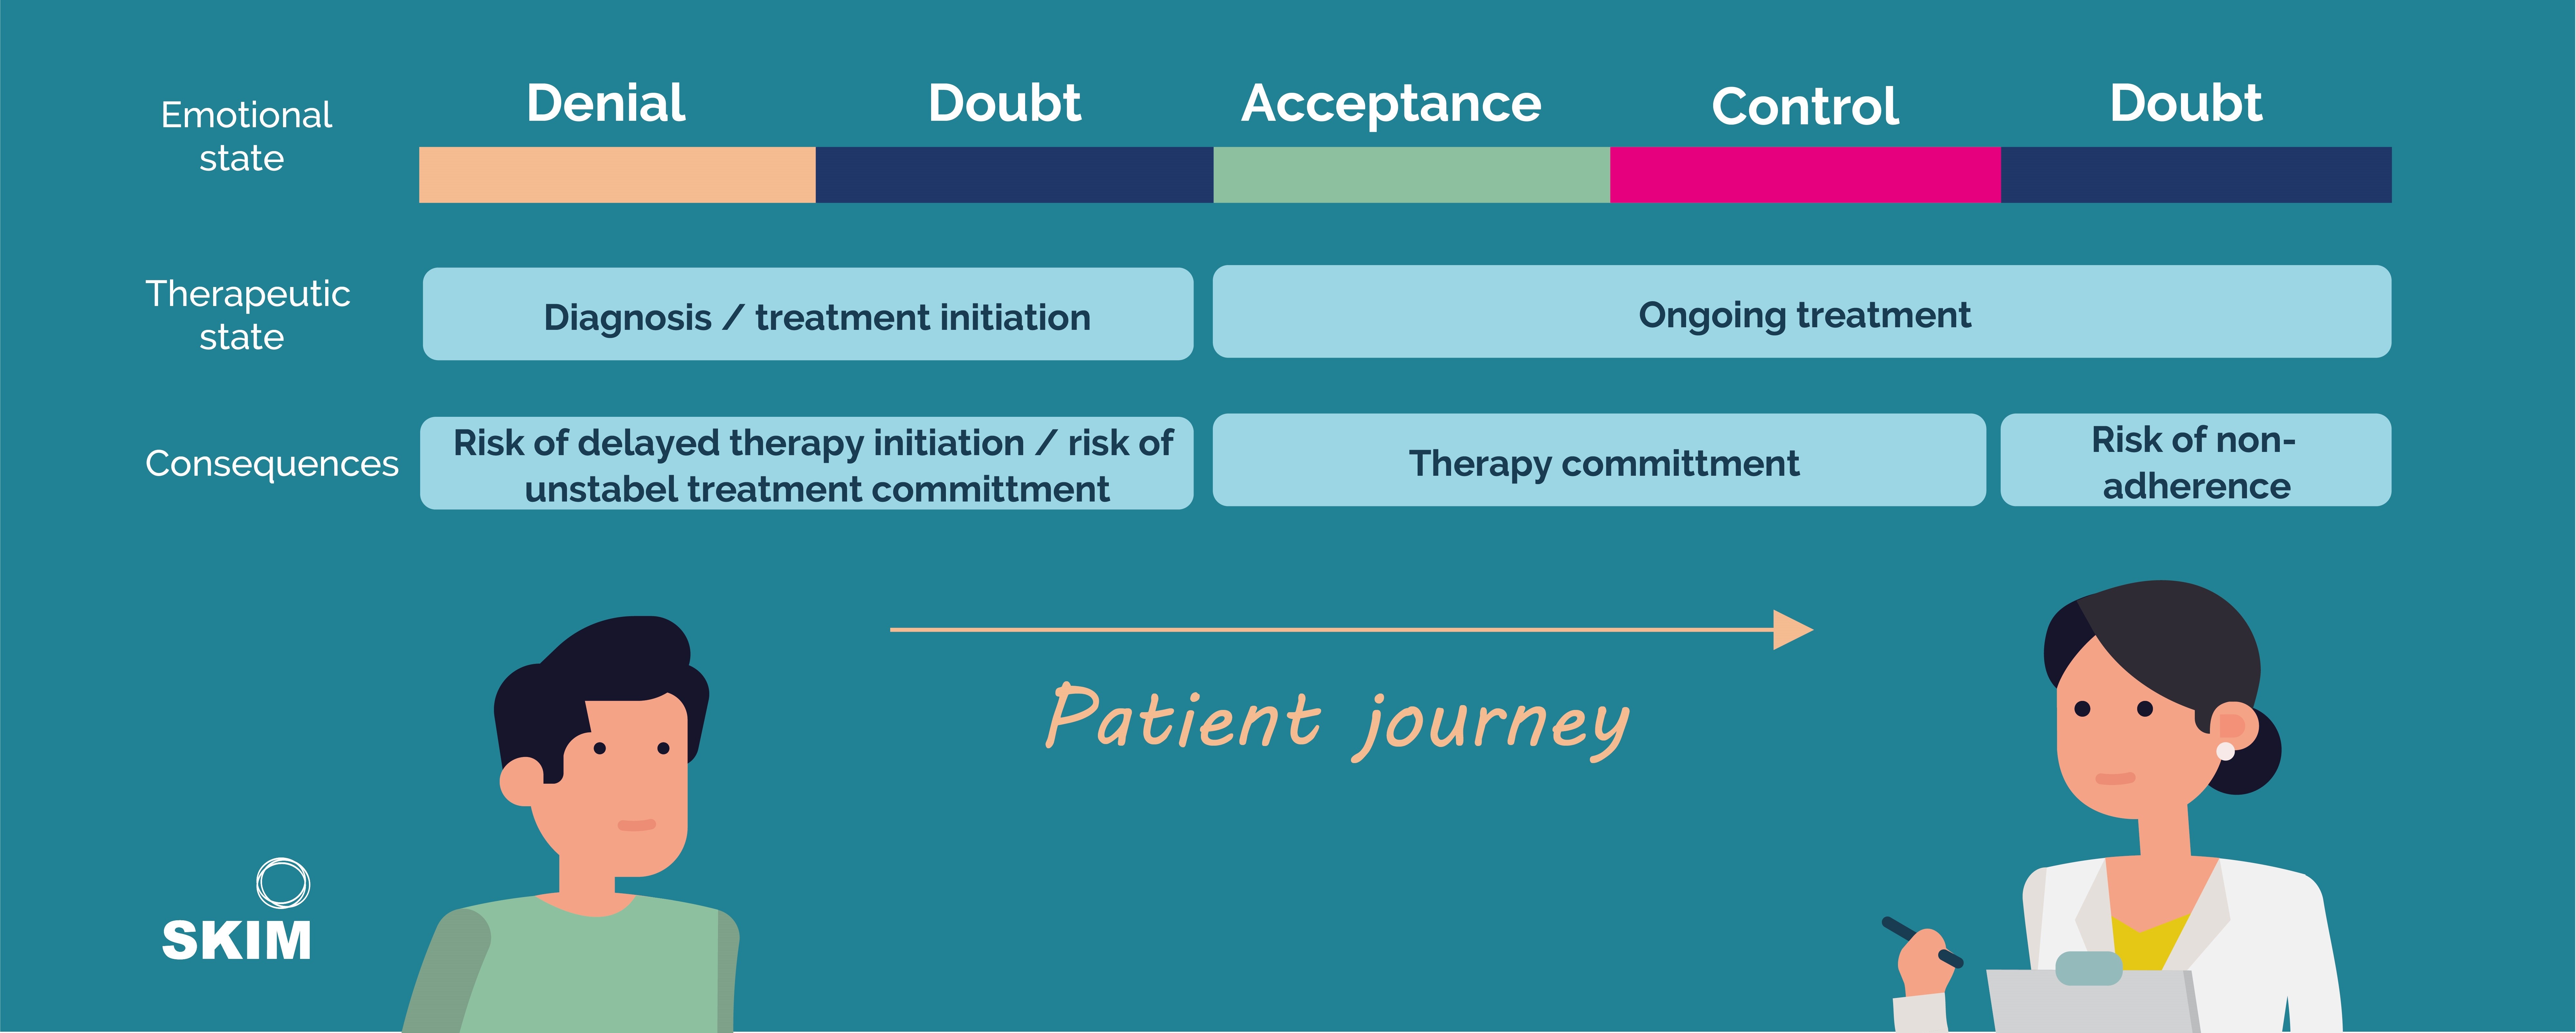 patient emotional journey